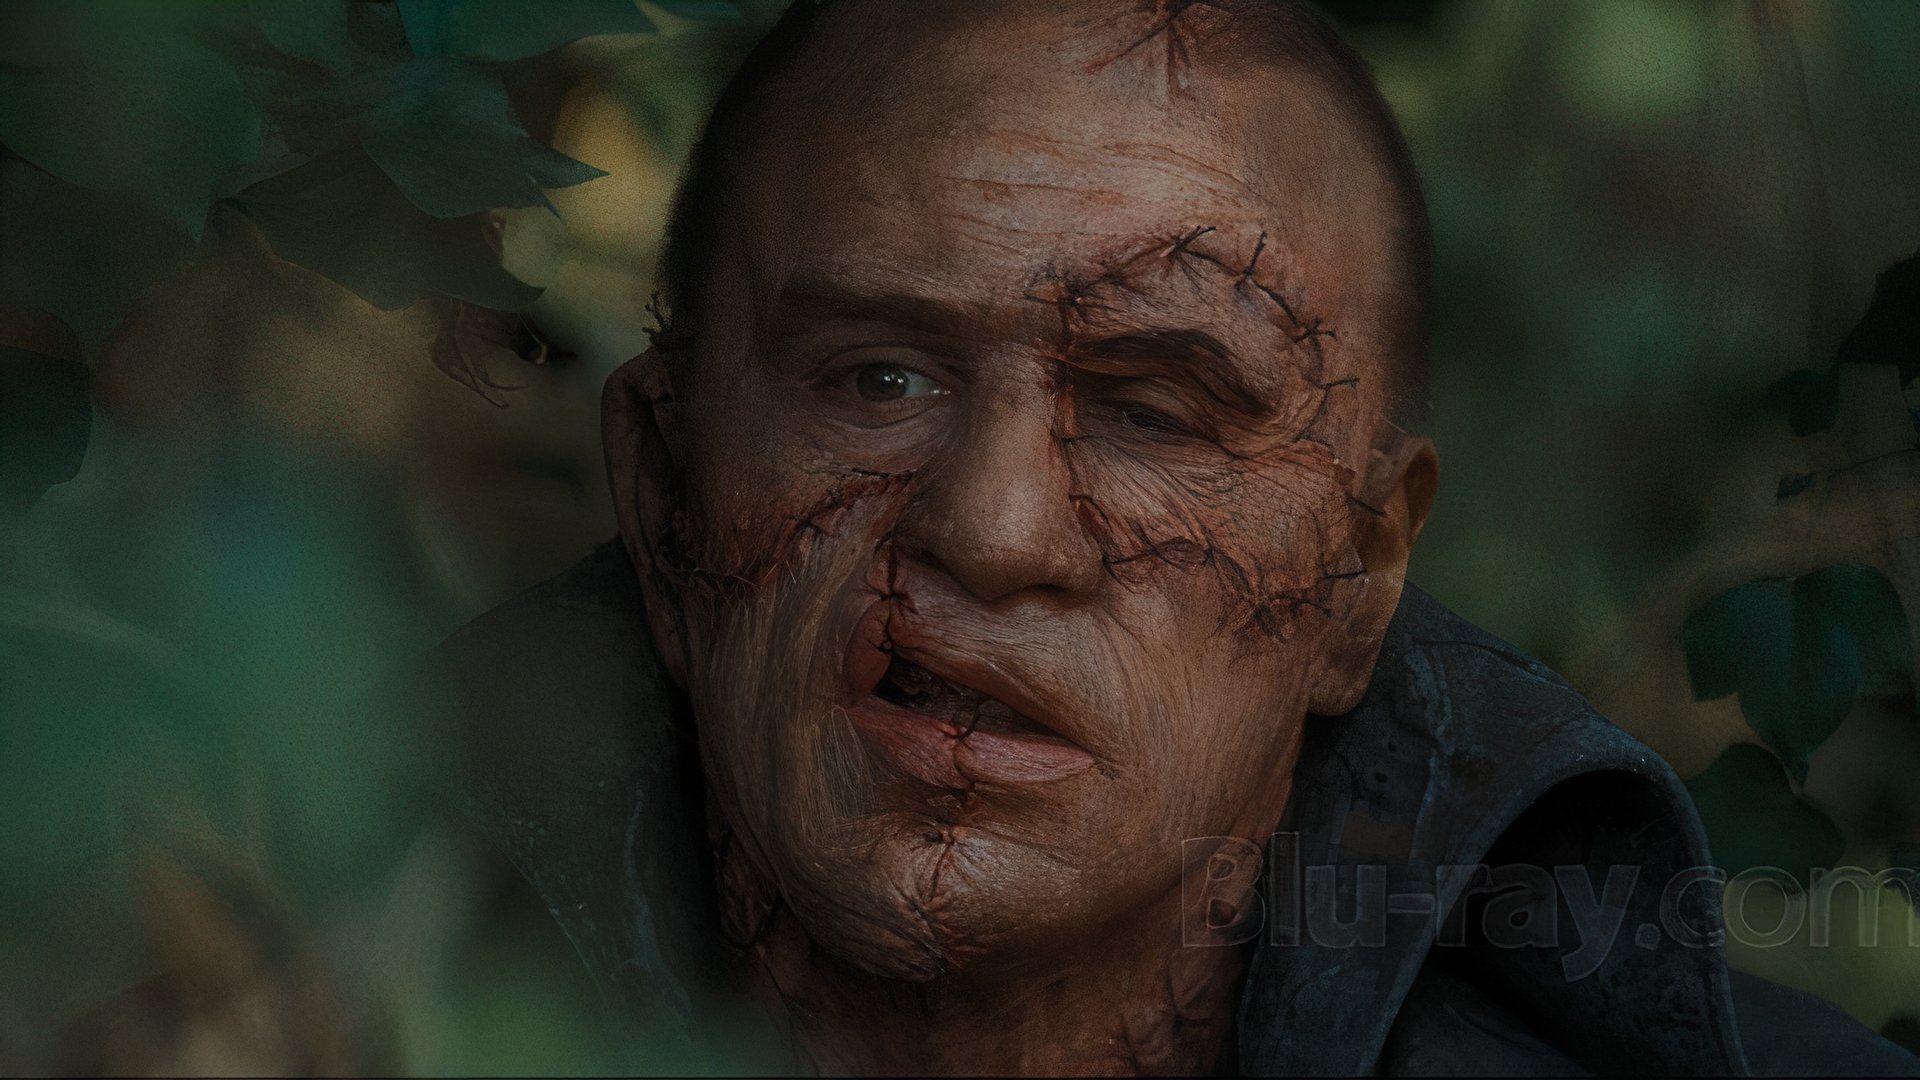 Robert De Niro as Frankenstein in the woods in 1994 movie